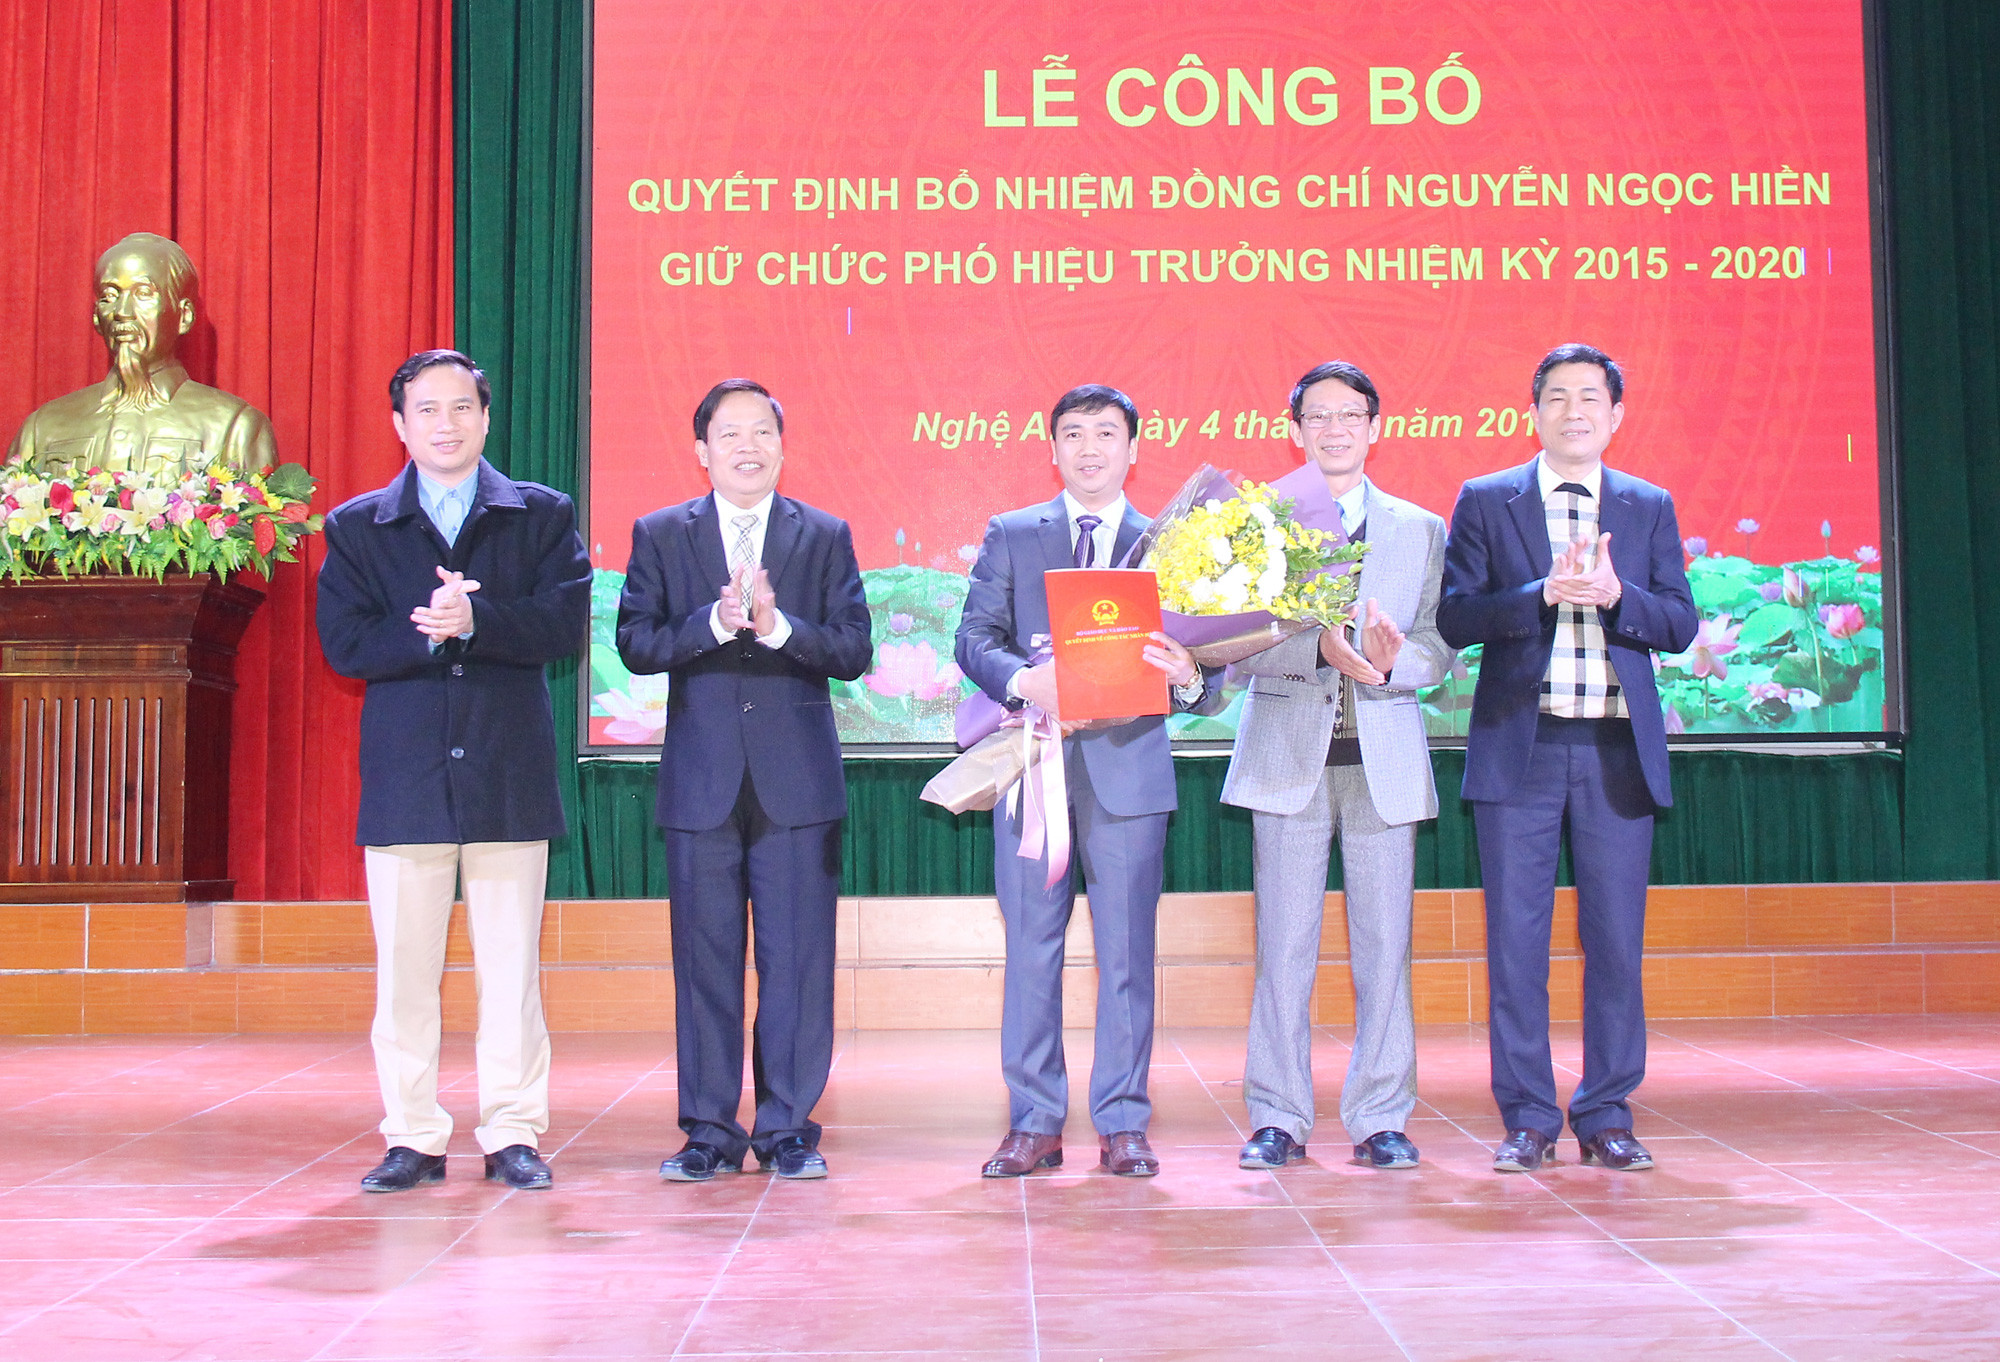 Ban Giám hiệu Trường đại học Vinh trao Quyết định và tăng hoa cho tân Phó Hiệu trưởng Nguyễn Ngọc Hiền. Ảnh: Mai Hoa